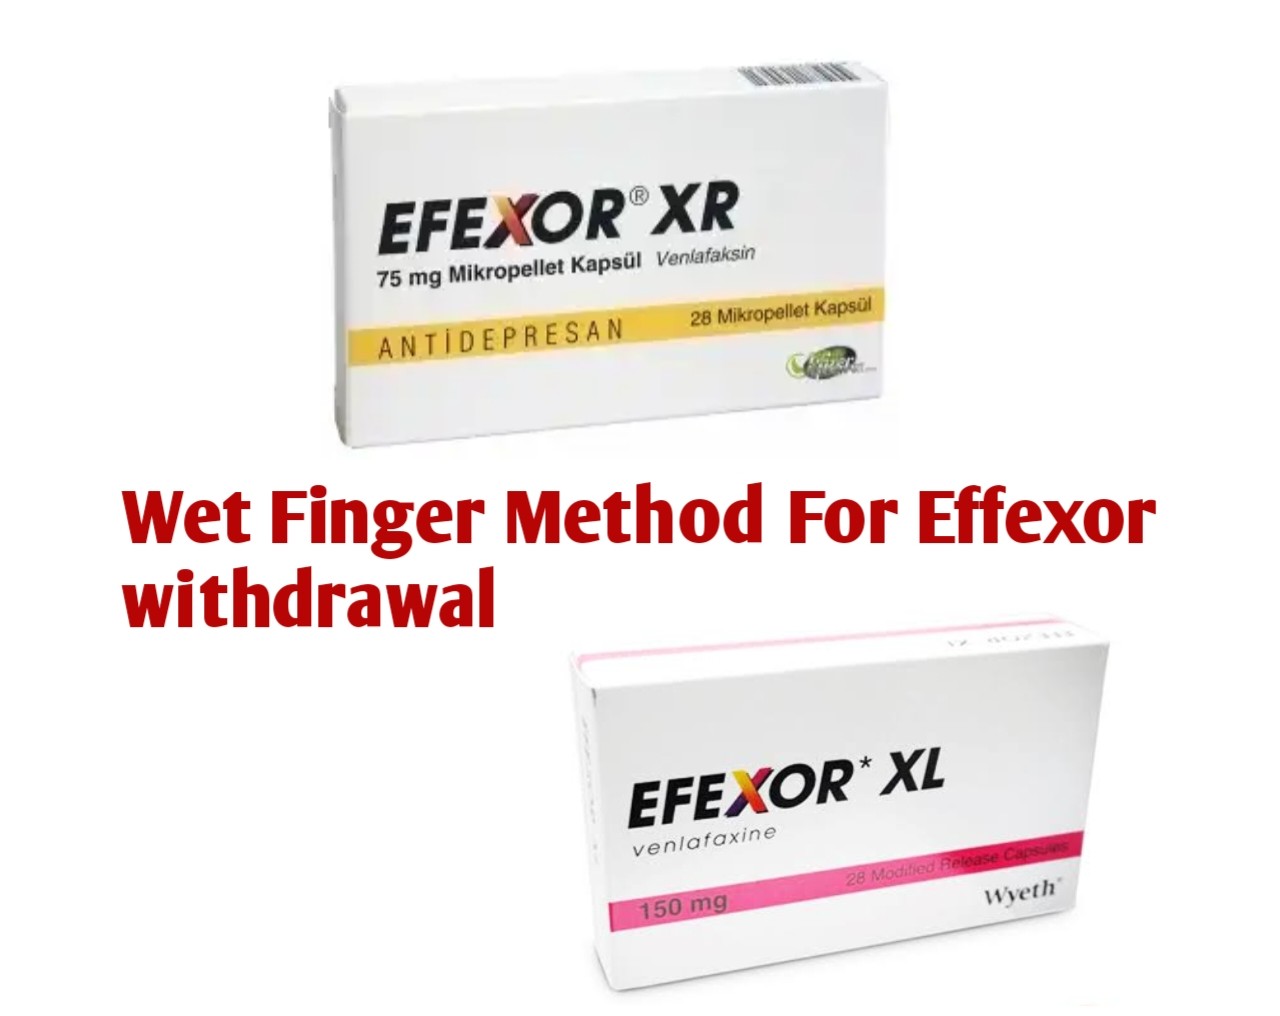 Wet Finger Method For Effexor Withdrawal